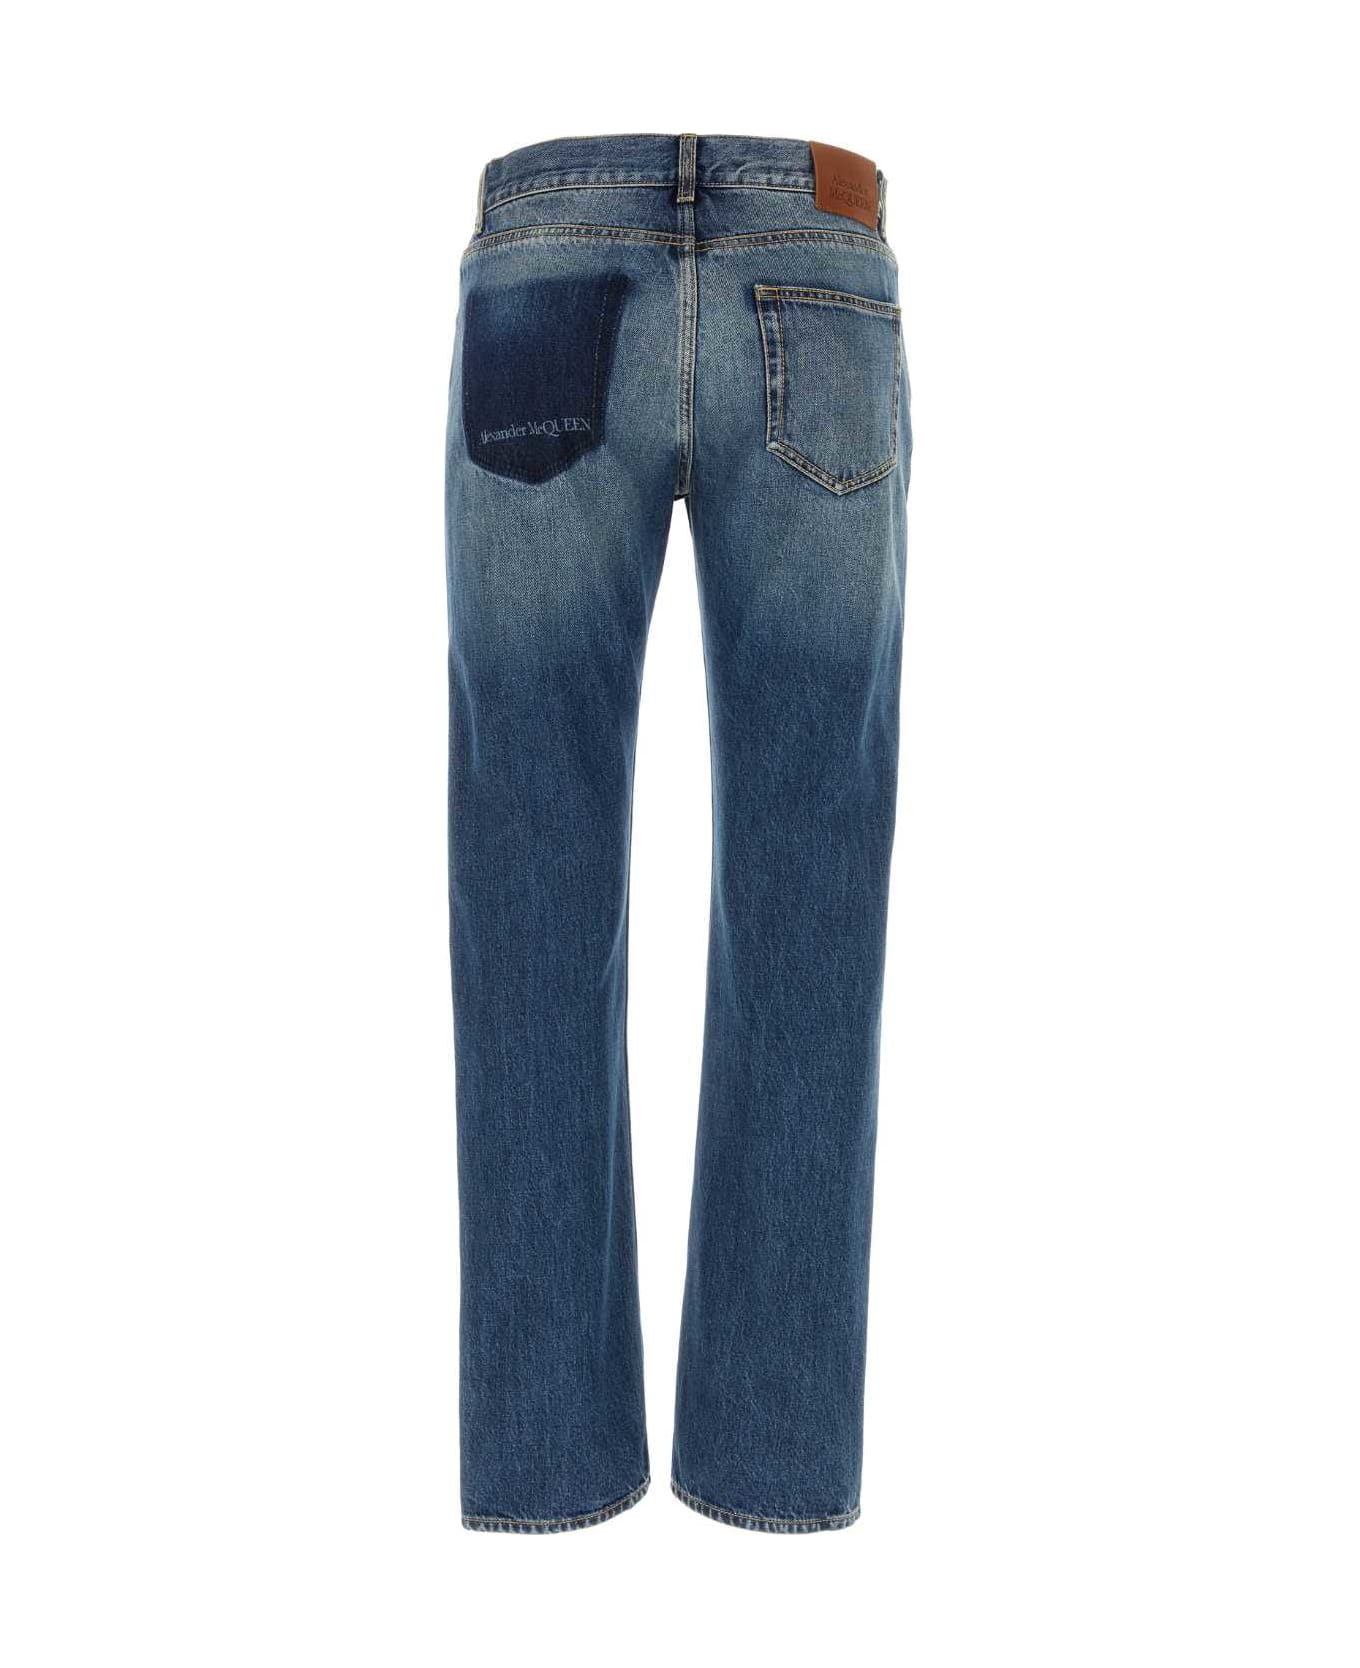 Alexander McQueen Denim Jeans - BLUEWASHED デニム